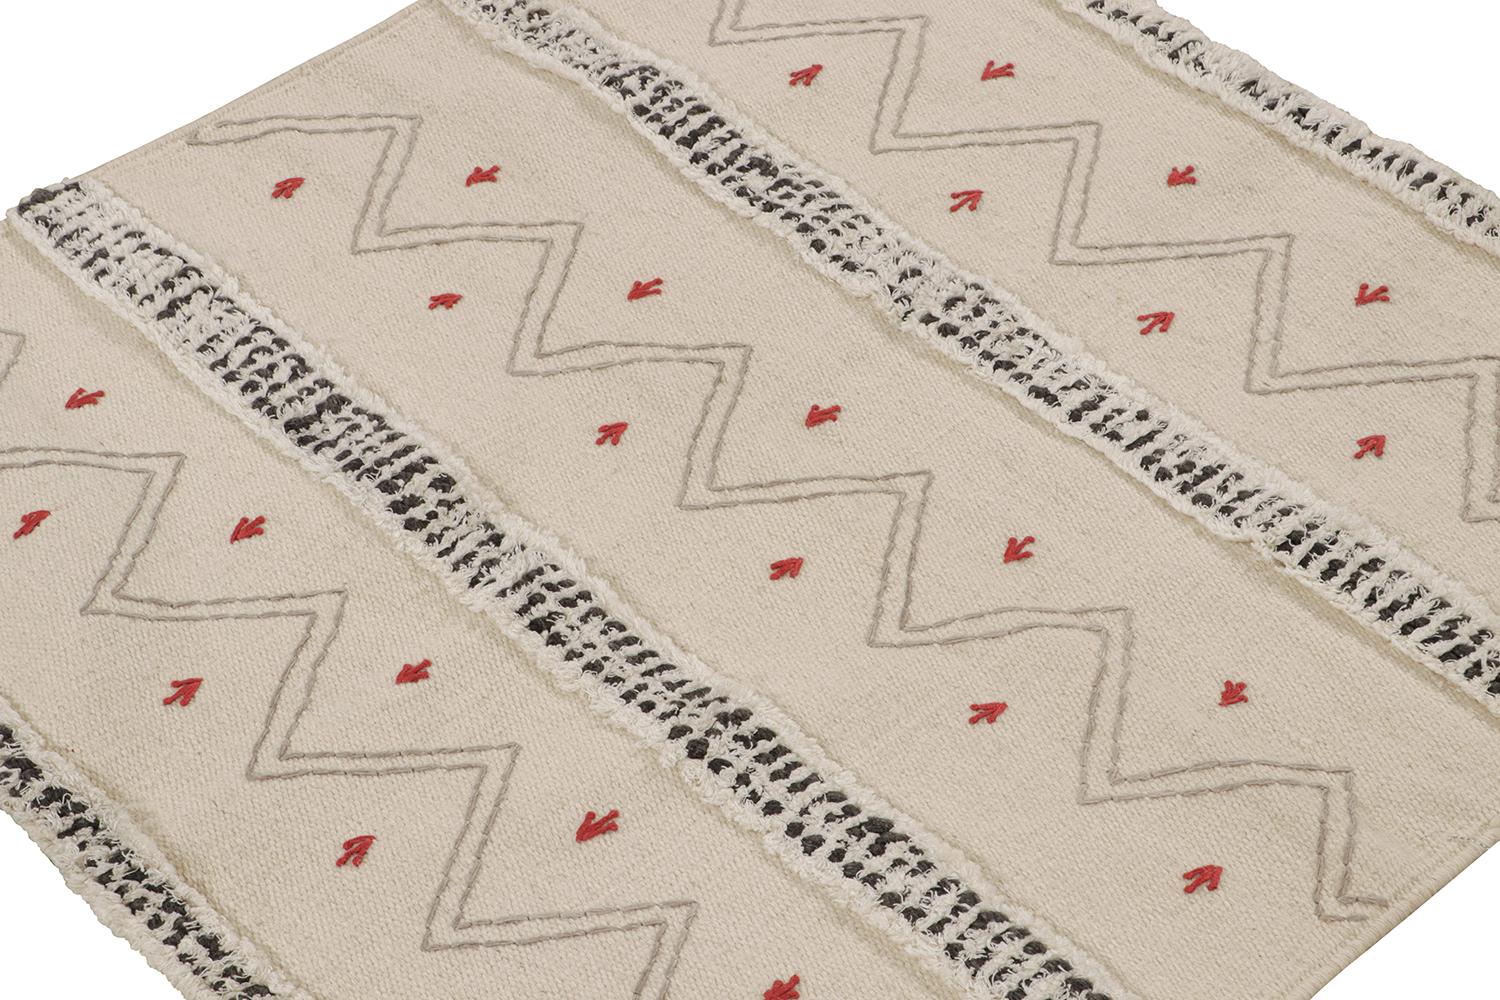 Ce tissage plat 3x3 est une nouvelle entrée grandiose dans le répertoire de kilims contemporains de Rug & Kilim. Tissé à la main en laine.

Sur le Design : 

Cette pièce s'inspire des tissages plats tribaux et se délecte du blanc cassé avec des